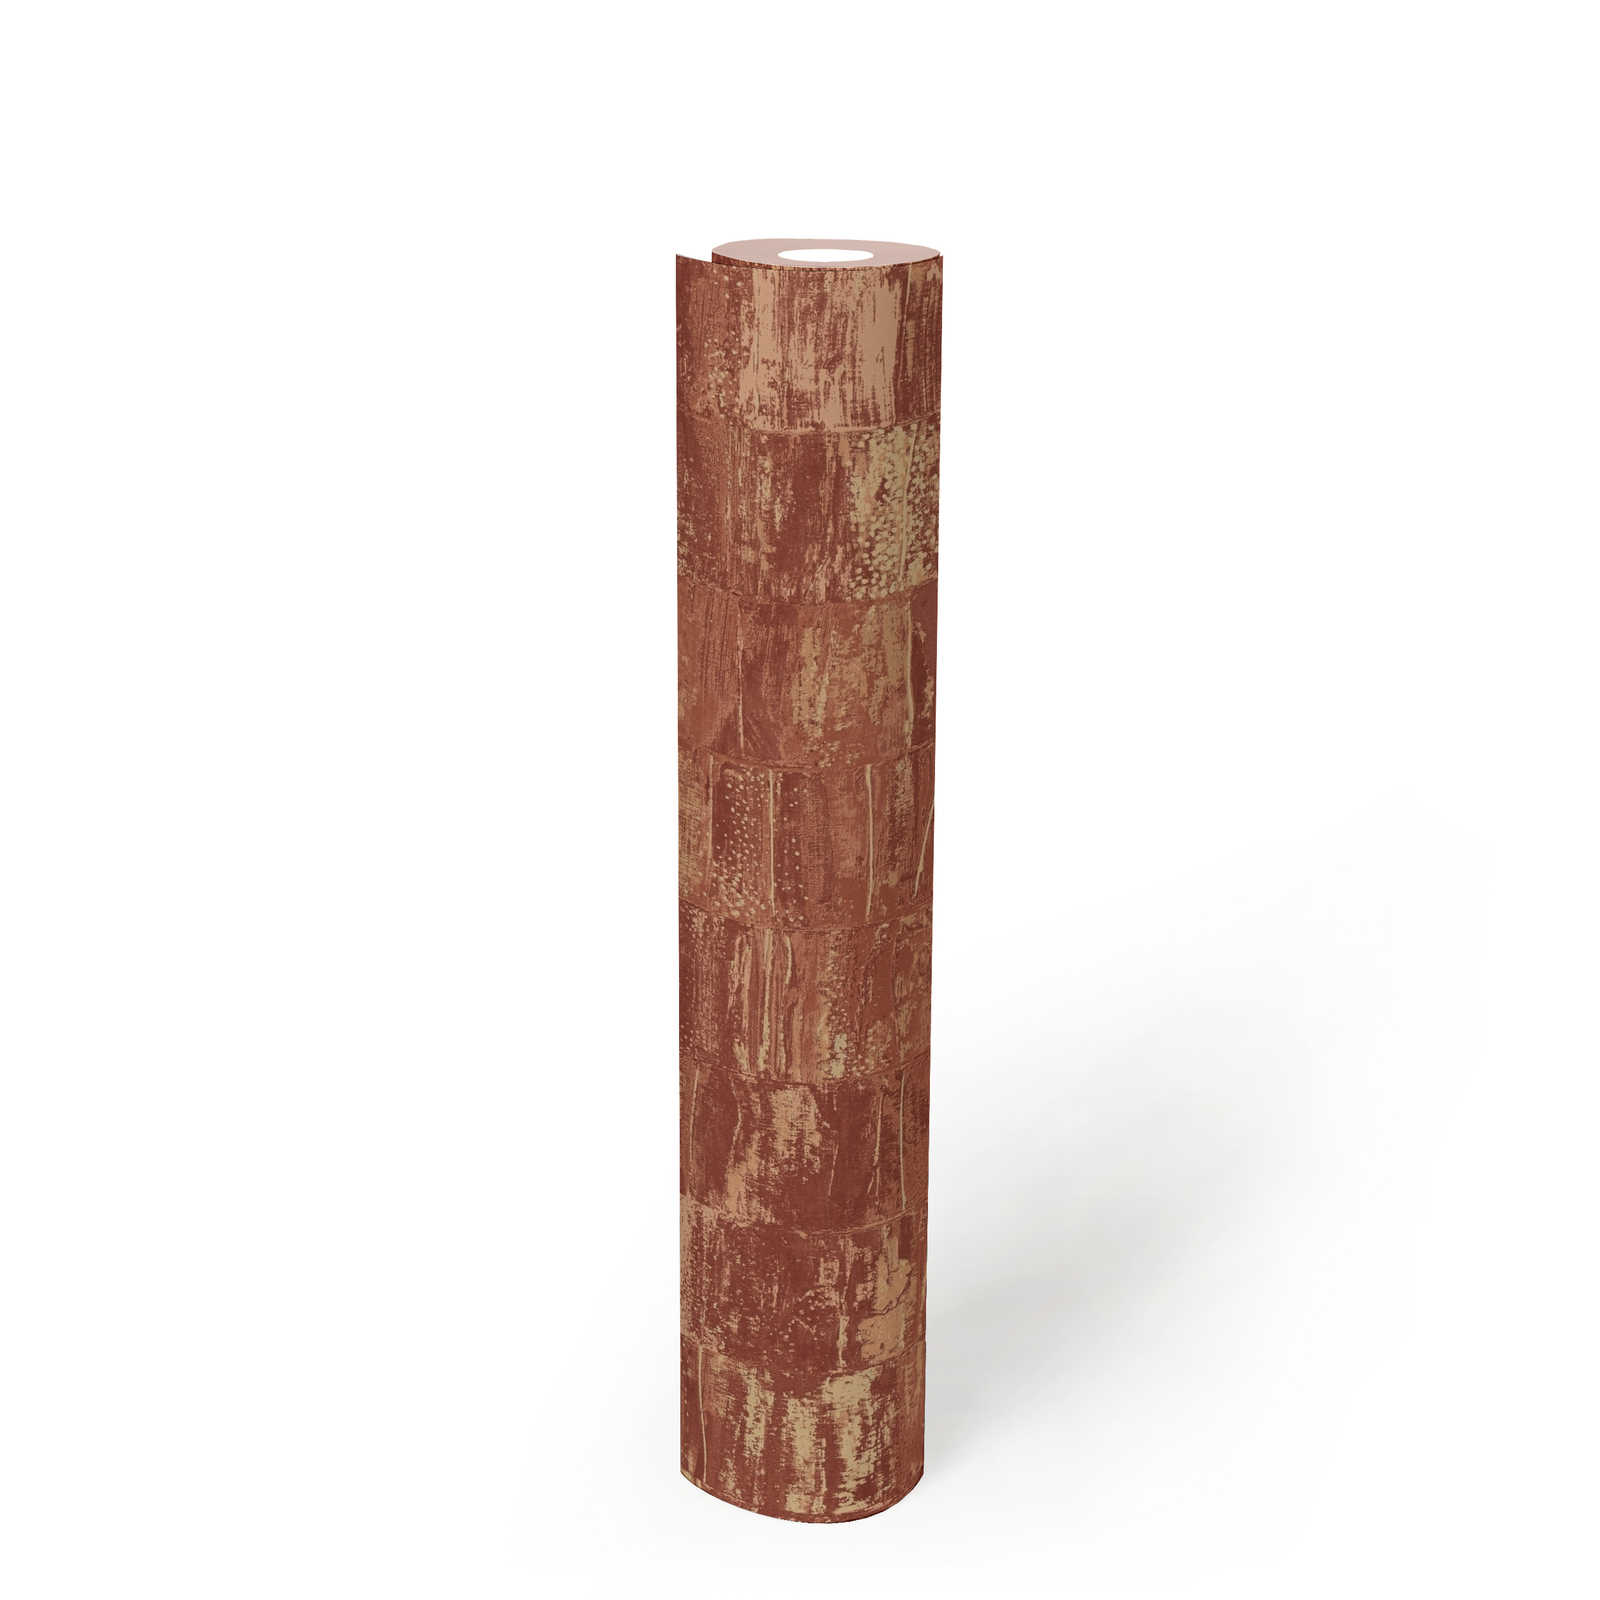             Vliesbehang roestrood met structuurmotief in used look - rood, bruin
        